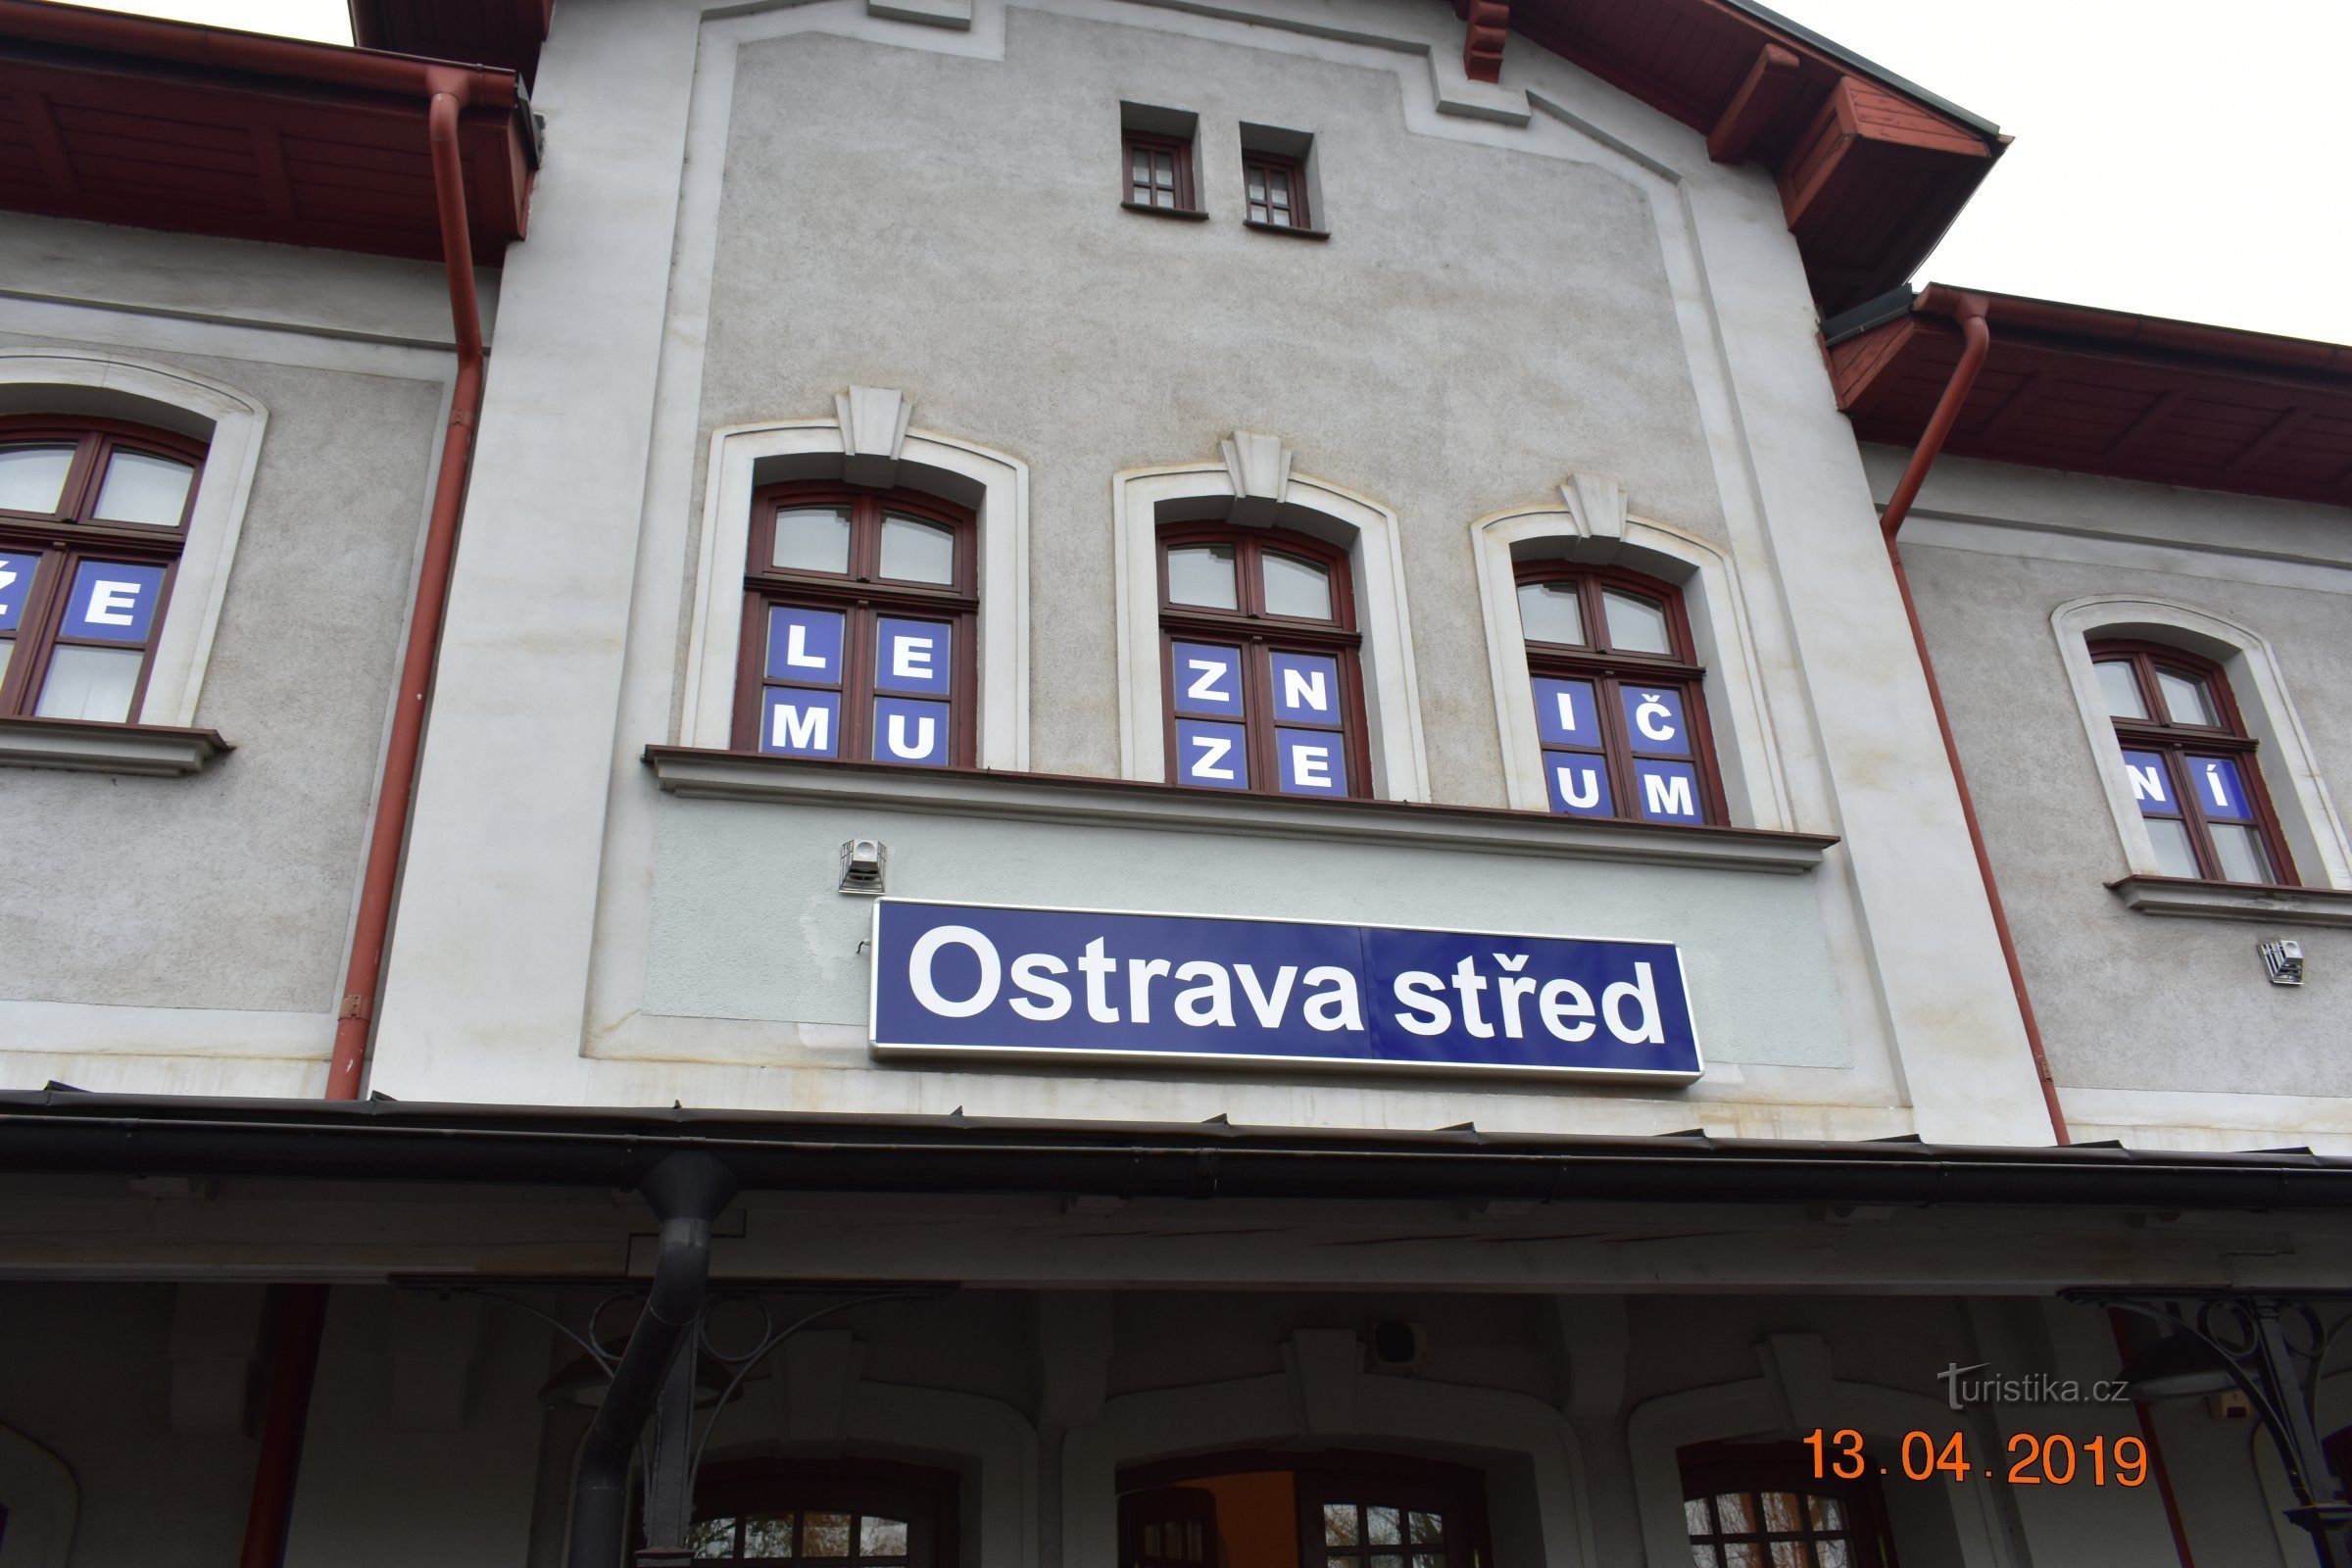 En train express Báňský le long des voies d'évitement du quartier Ostrava-Karvinsky